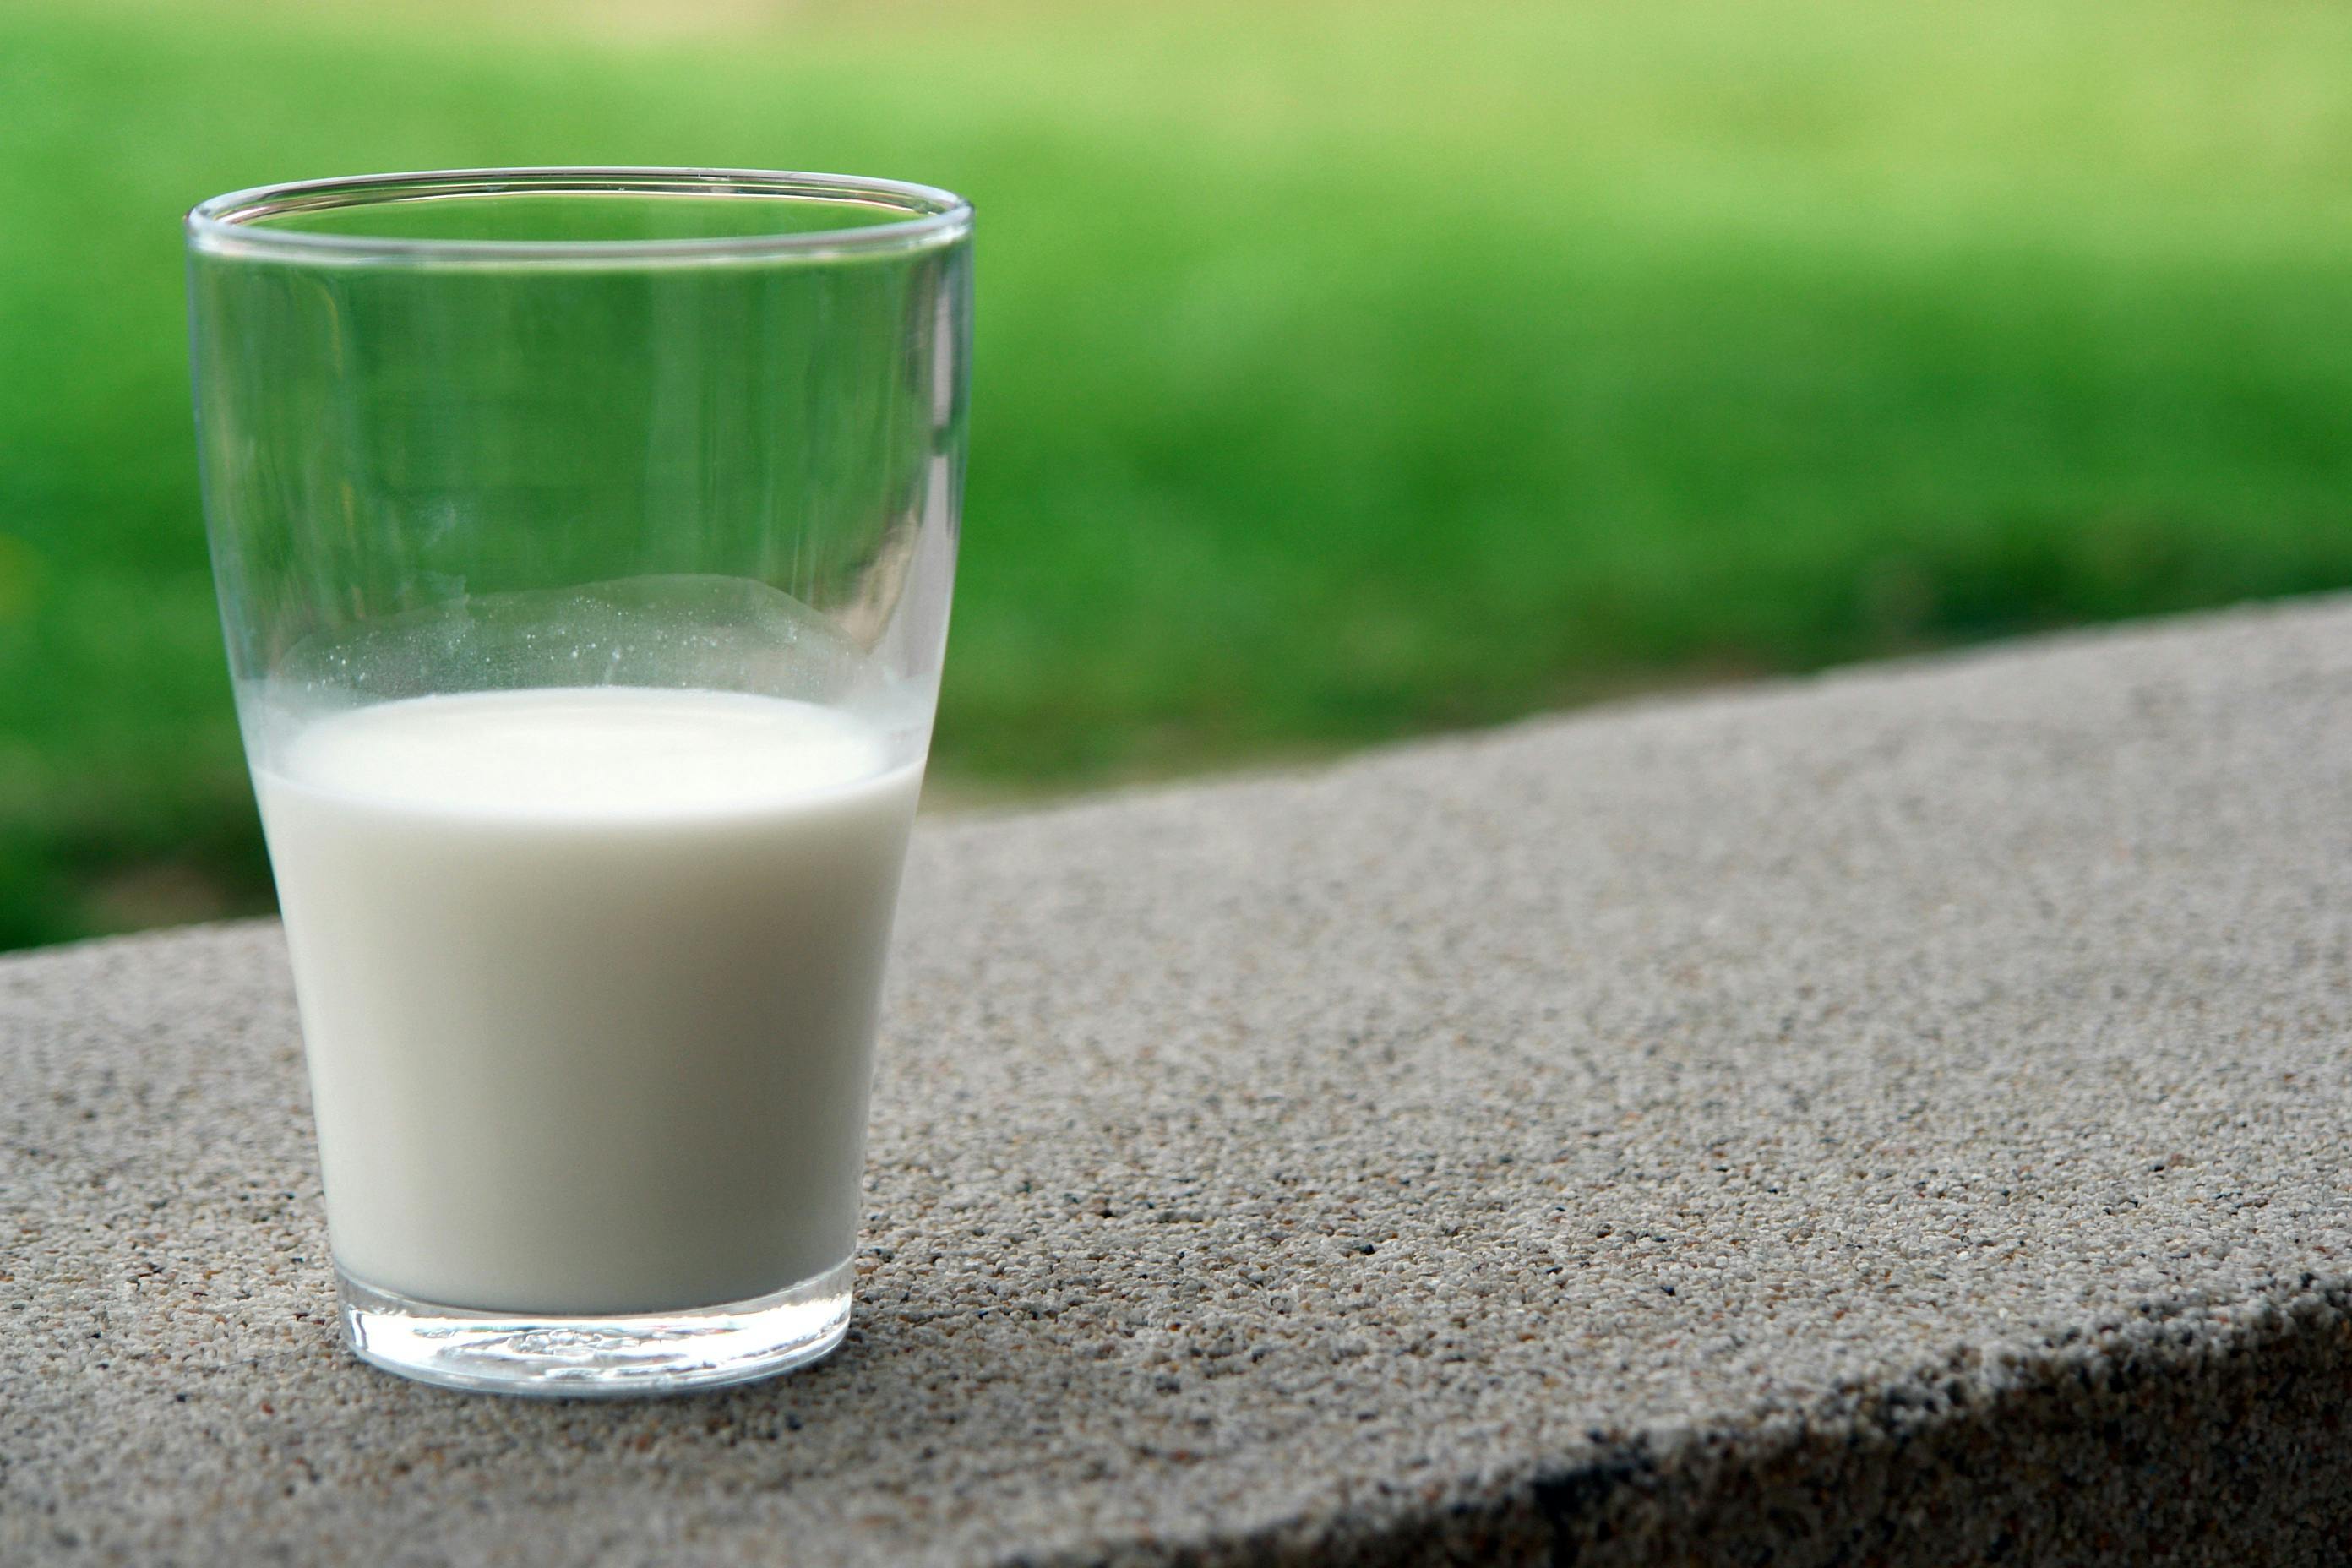 Un vaso de leche. | Fuente: Pexels